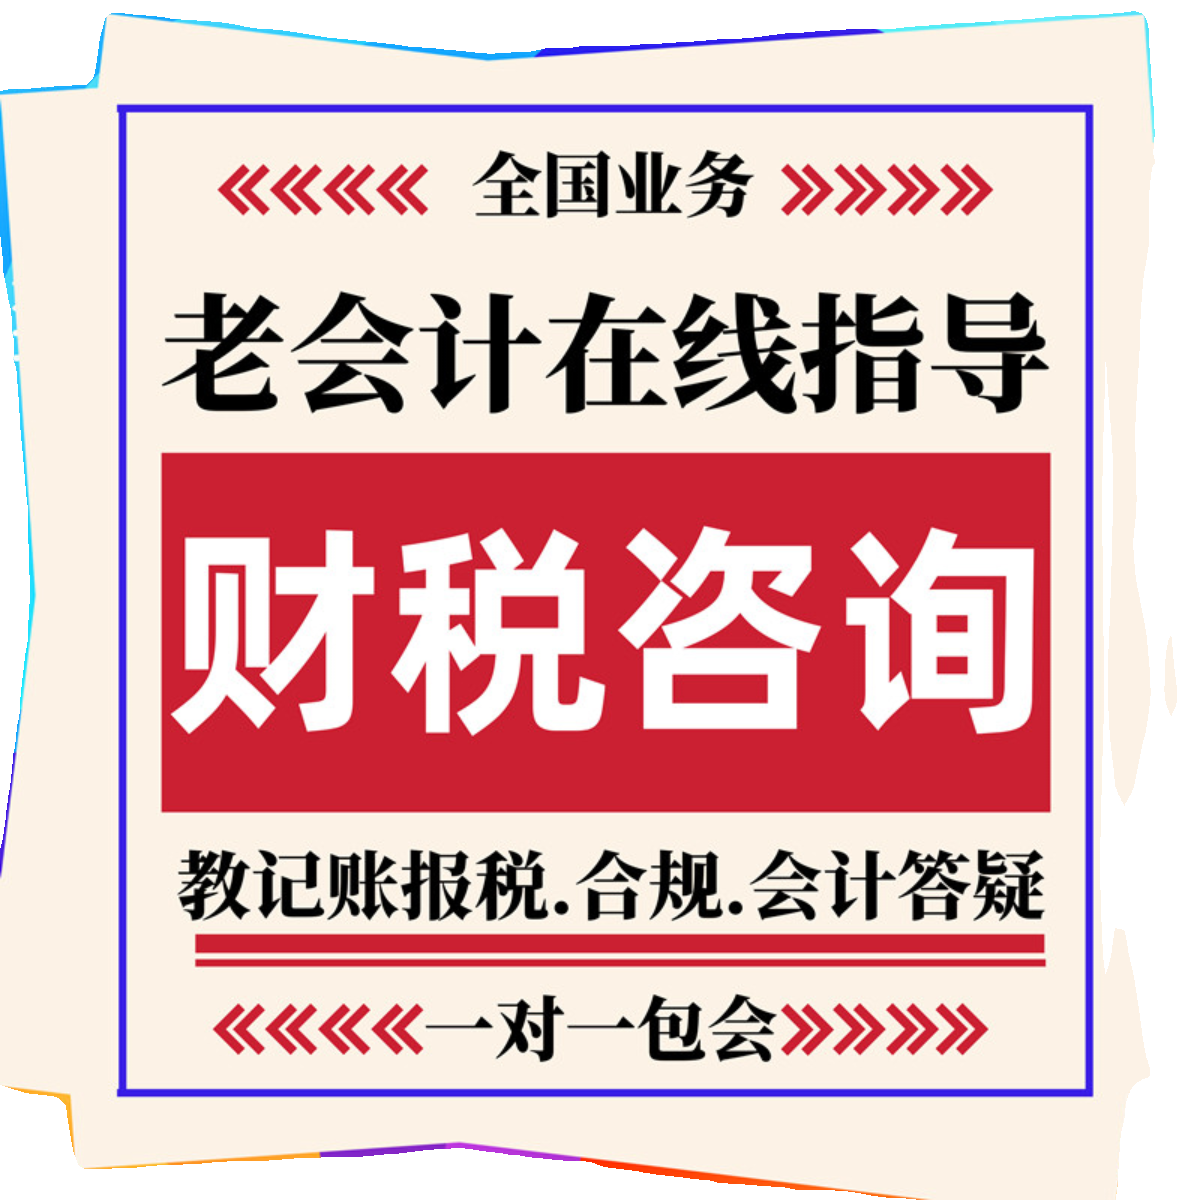 上海代理记账会计账务处理税务指导财务咨询网上报税答疑申报纳税 - 图3